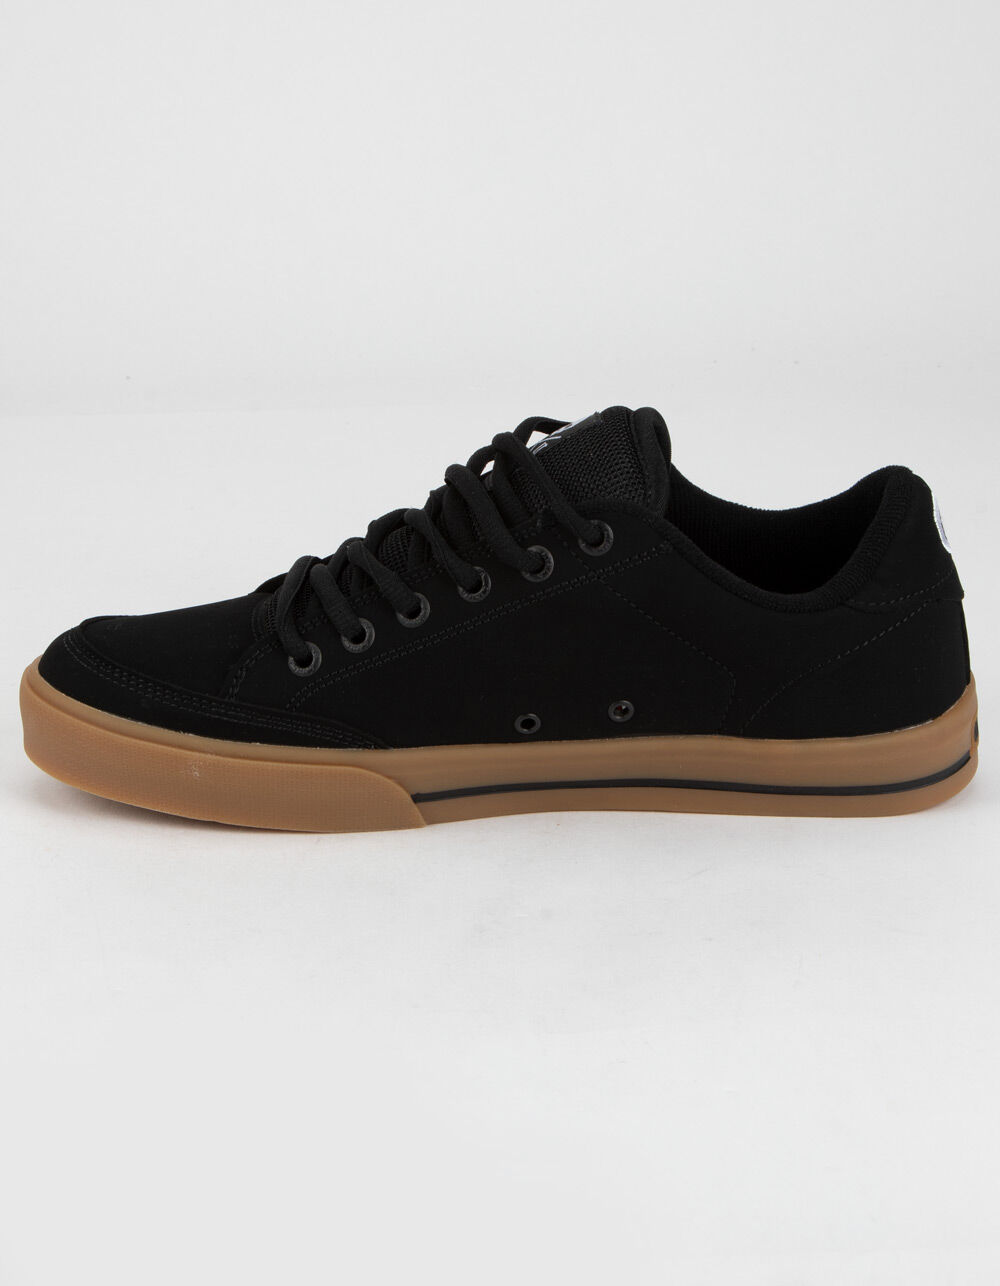 CIRCA AL50 Mens Black & Gum Shoes - BLACK/GUM | Tillys